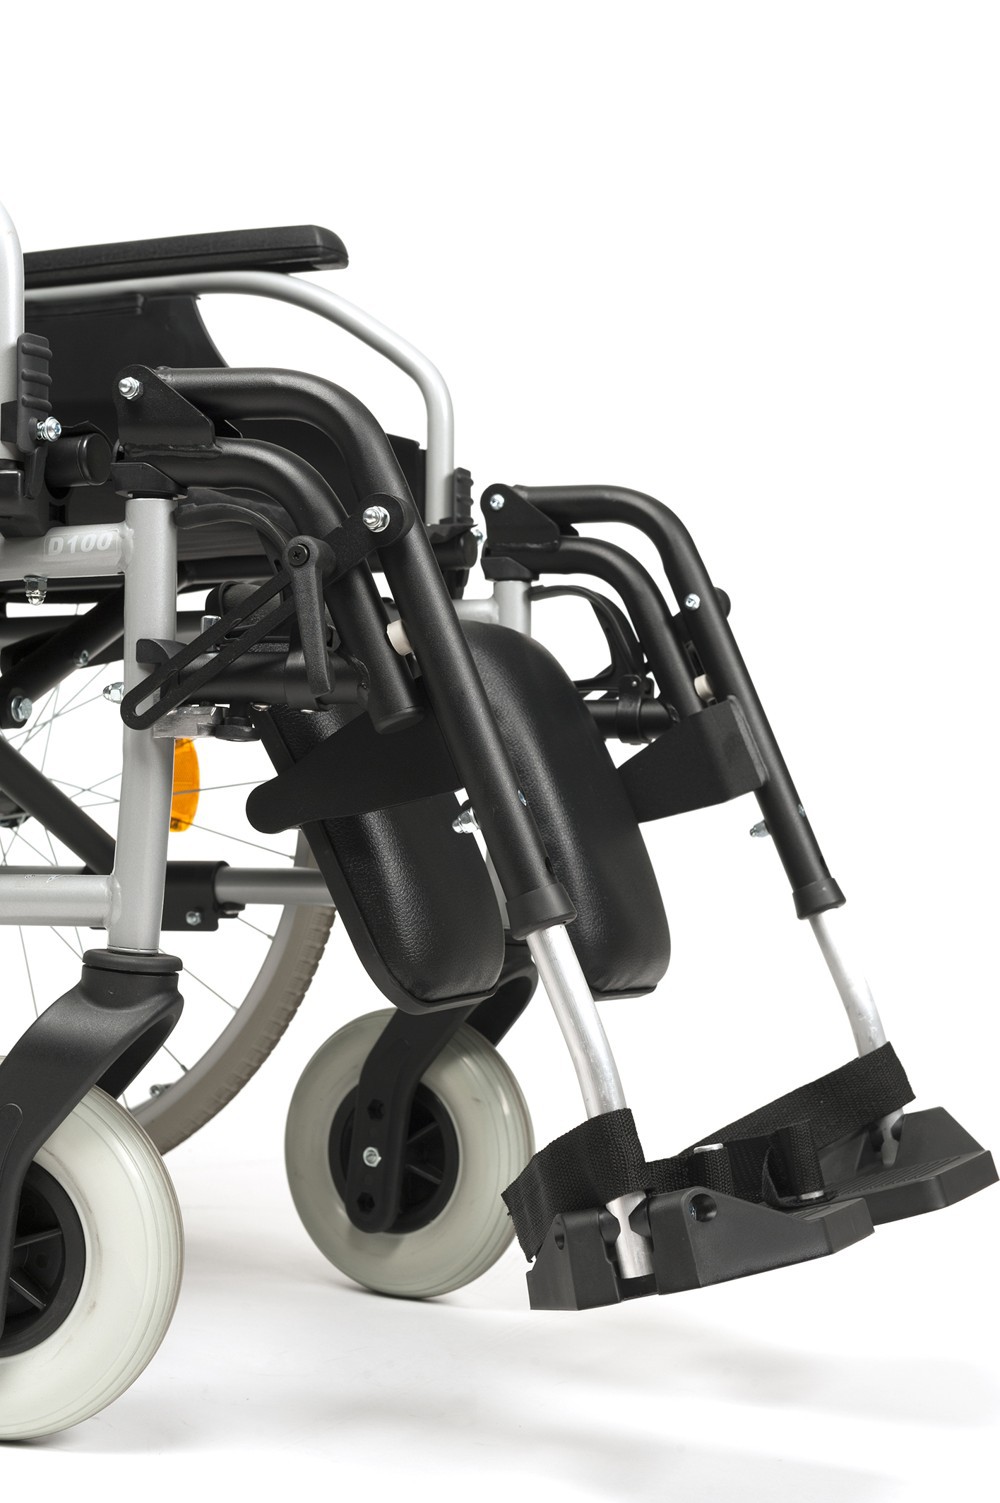 Кресло-коляска инвалидное механическое Vermeiren V100